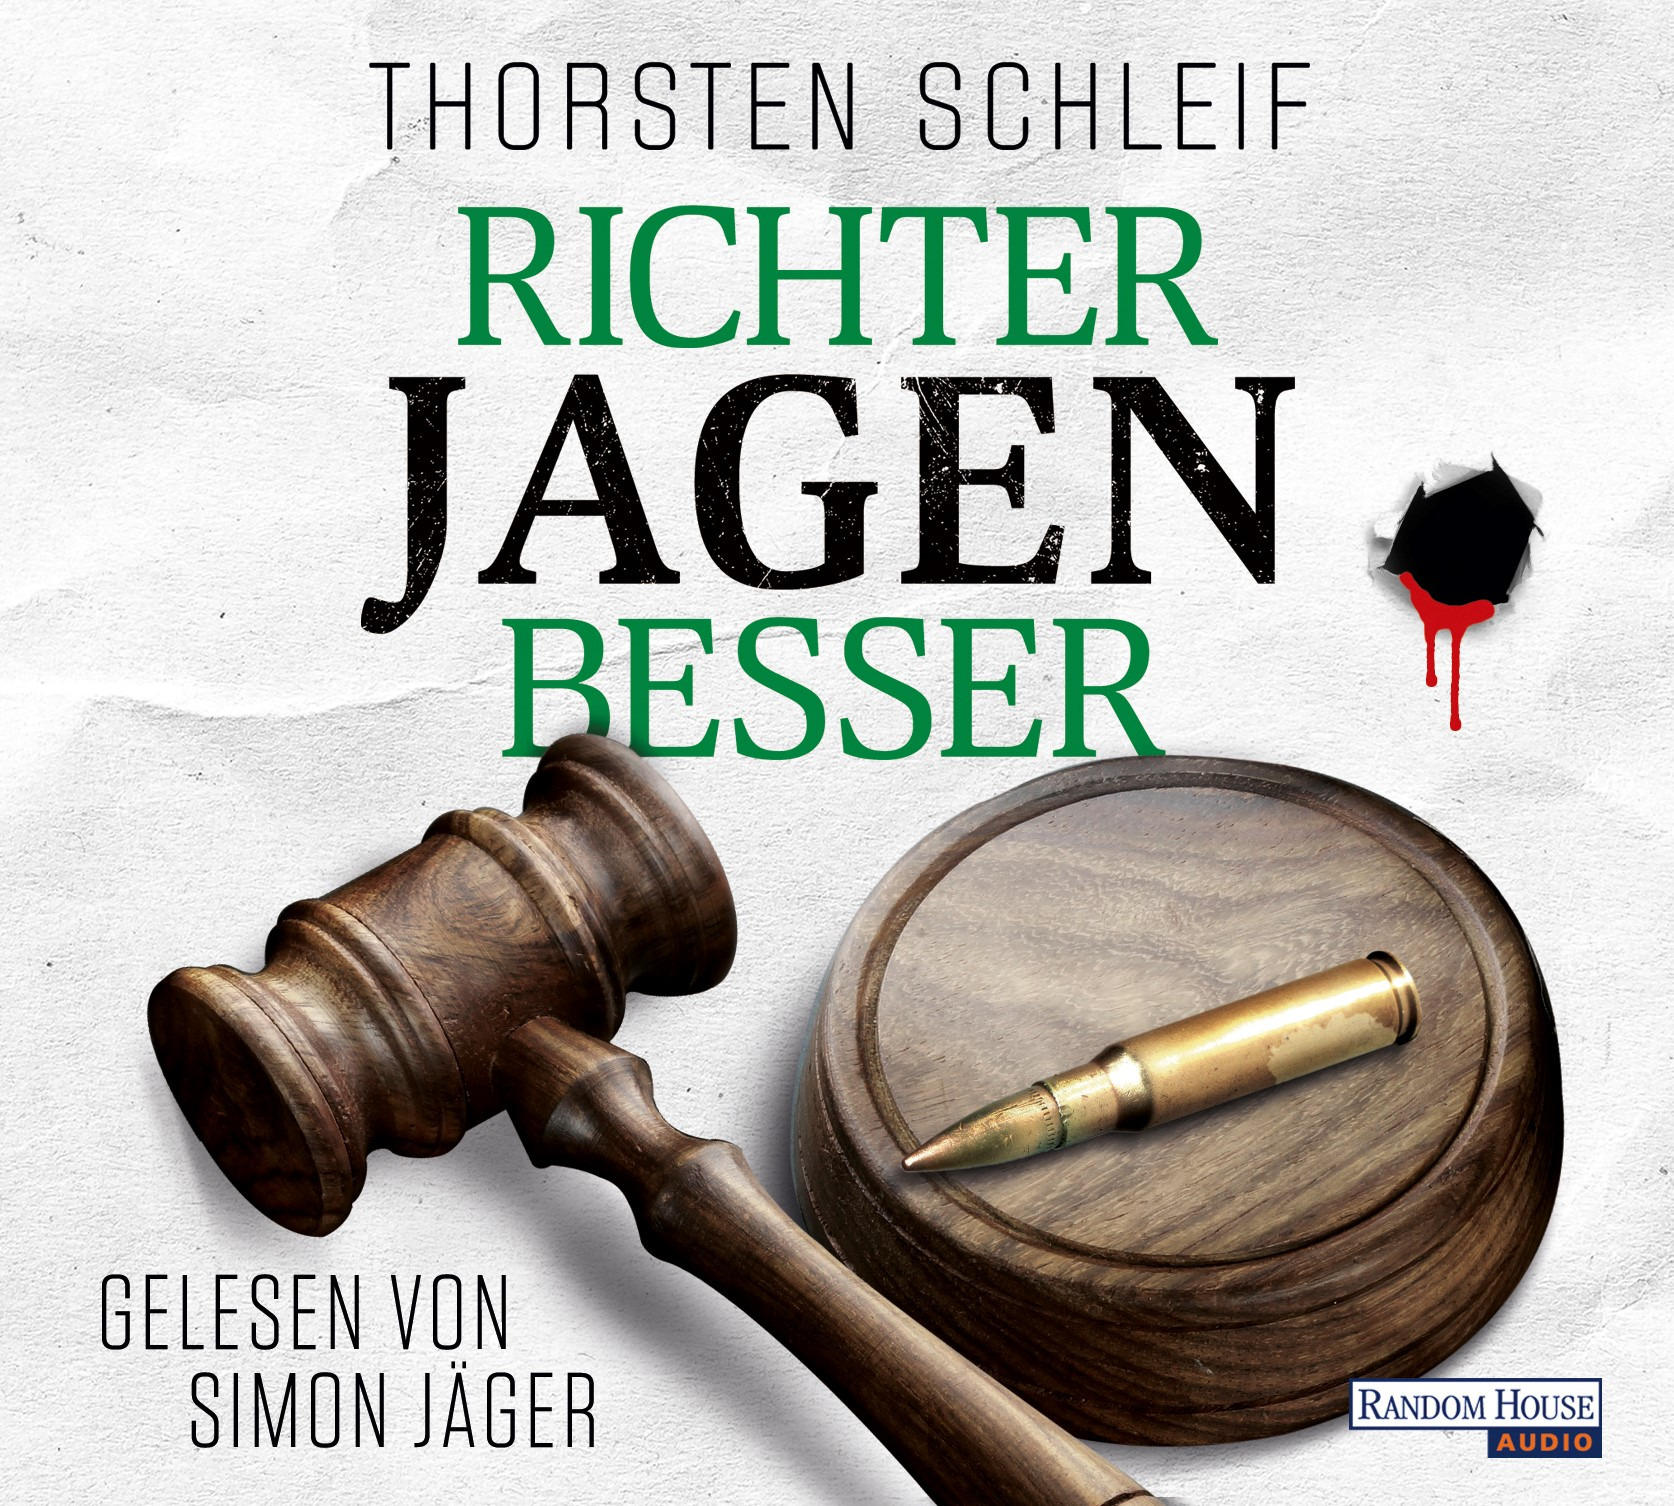 Thorsten Schleif - Richter jagen (CD) - besser